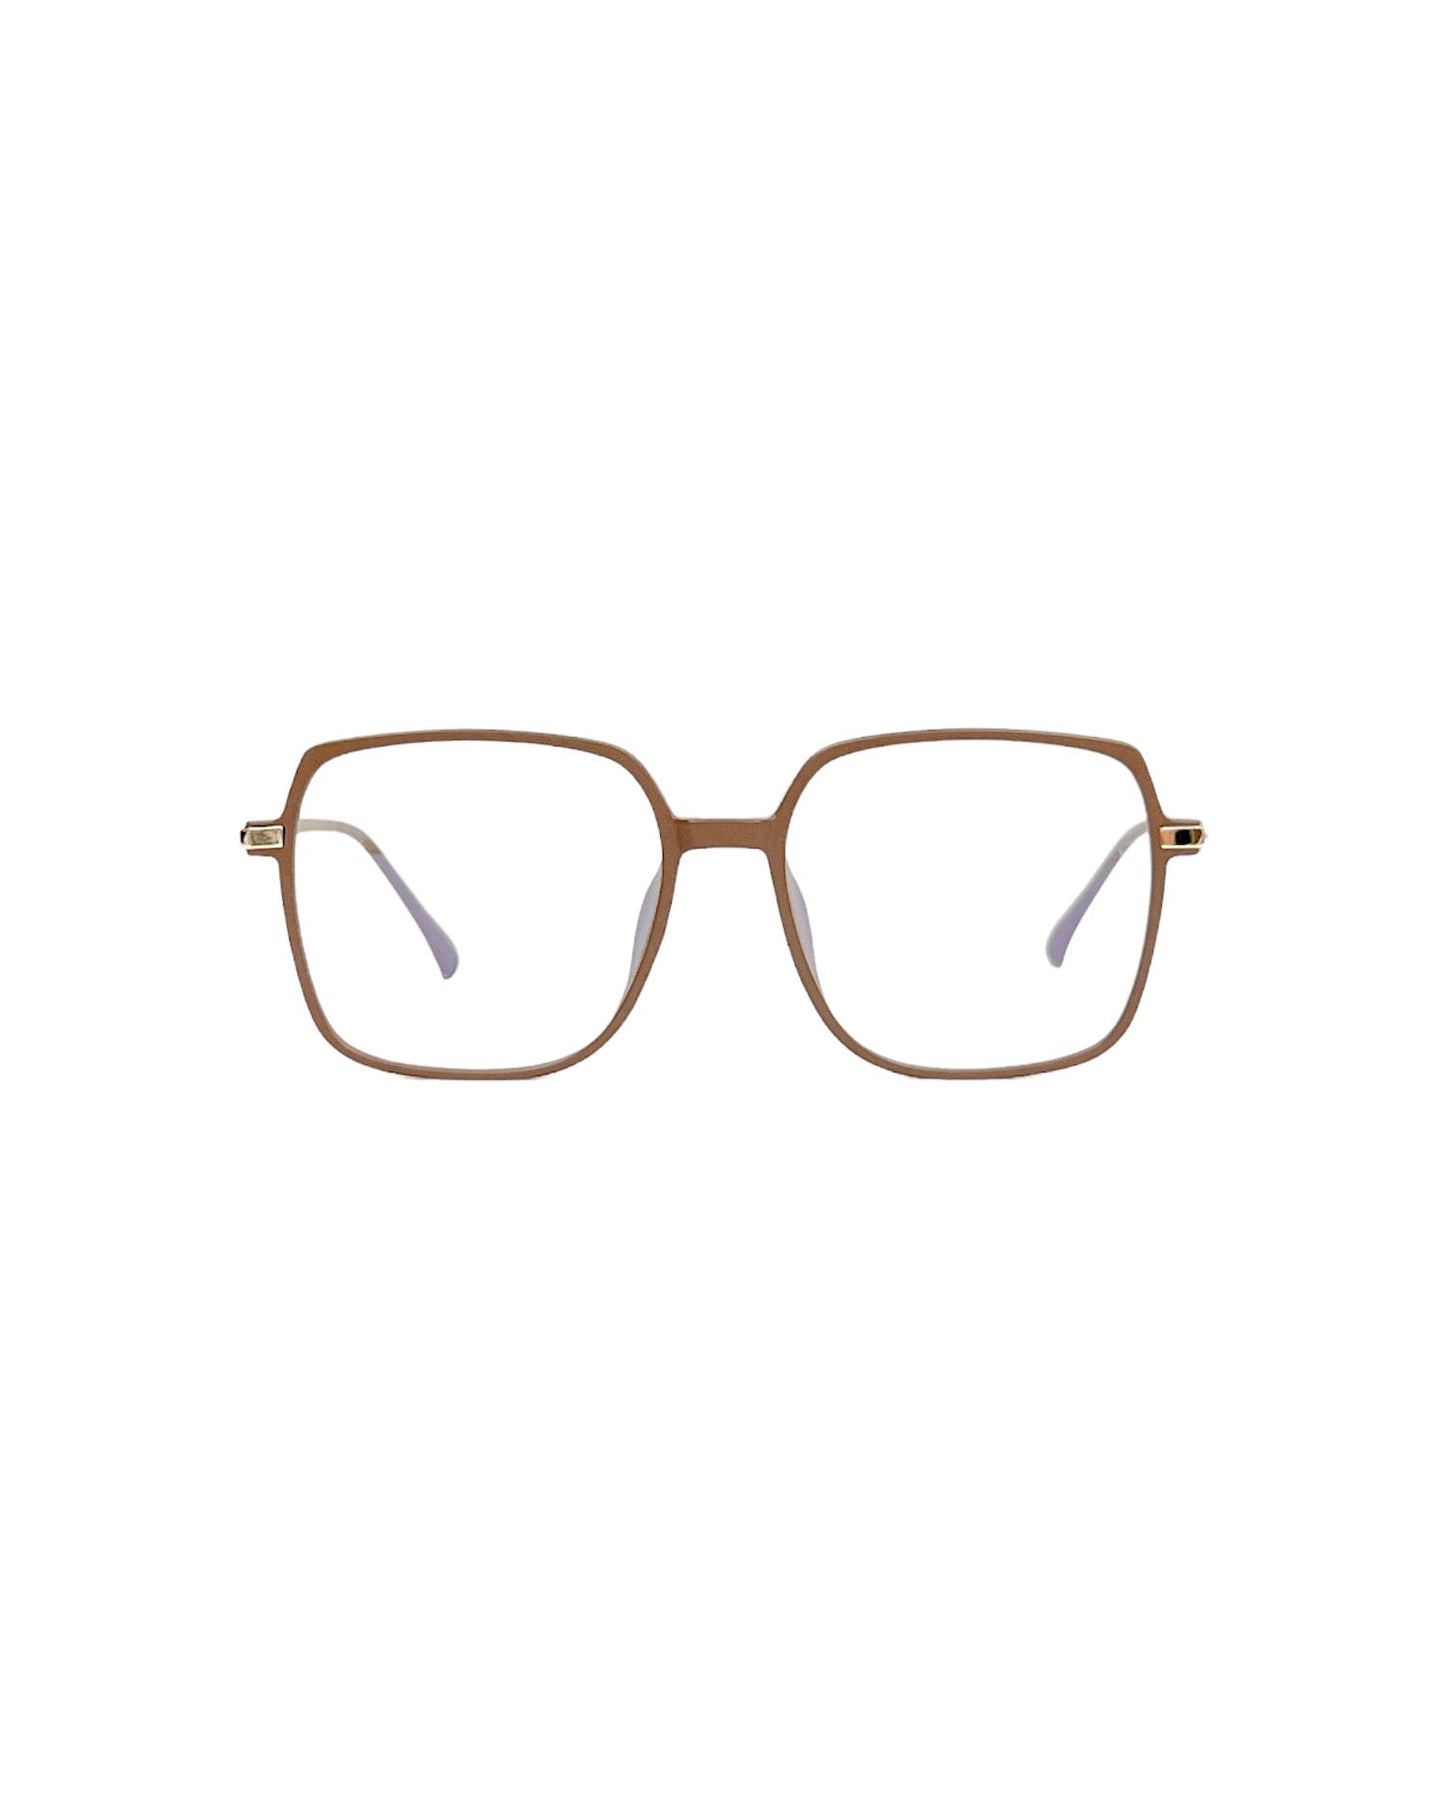 matt brown frame clear lens glasses